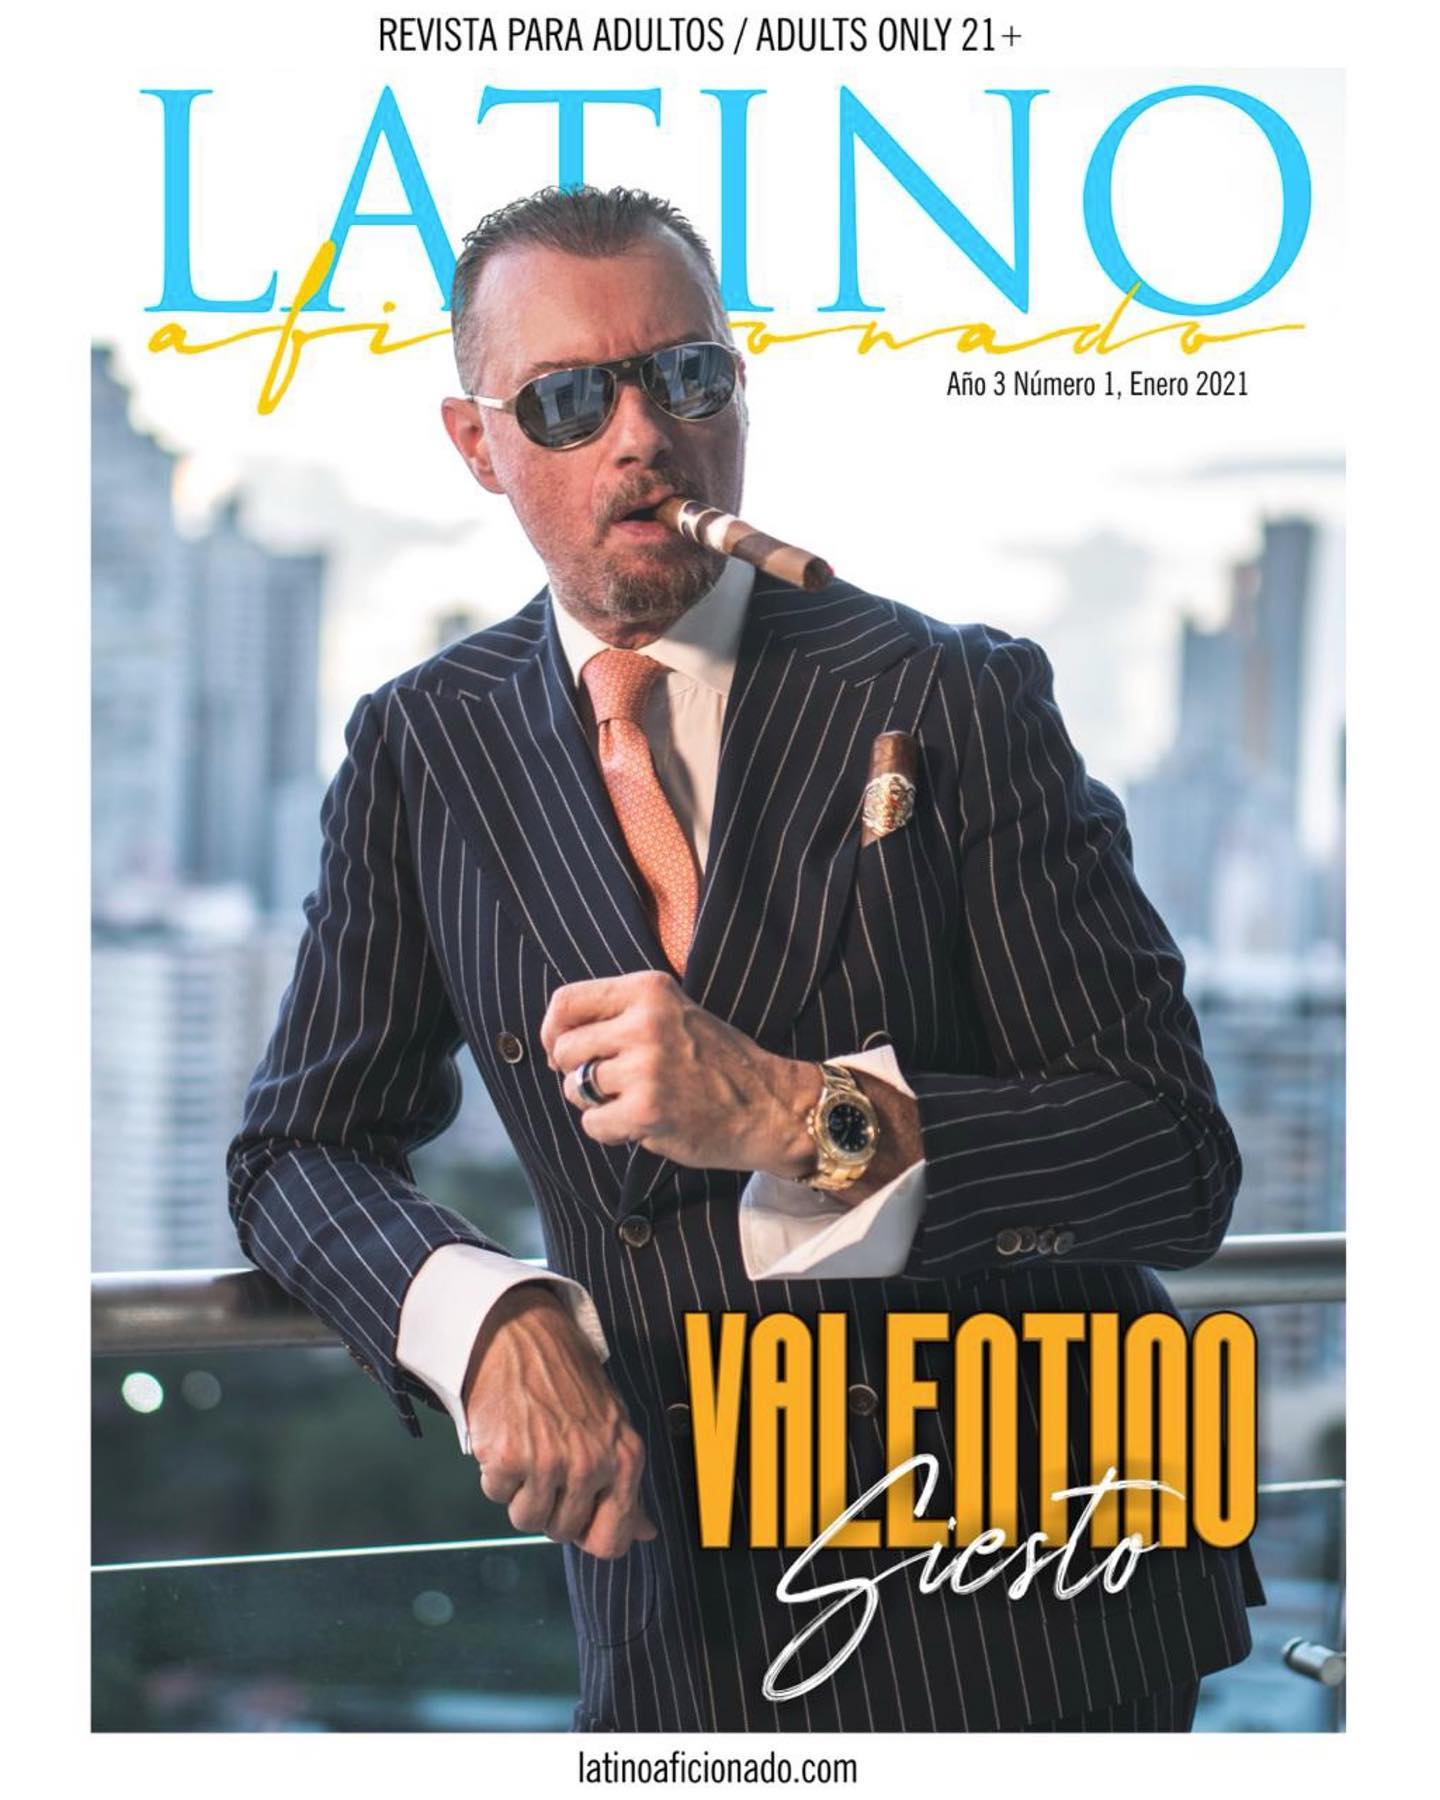 Acabou de sair a nova edição da revista “Latino Aficionado”, e desta vez, escrevi uma matéria especial sobre o maior cigar lounge da América Latina, a Caruso Lounge